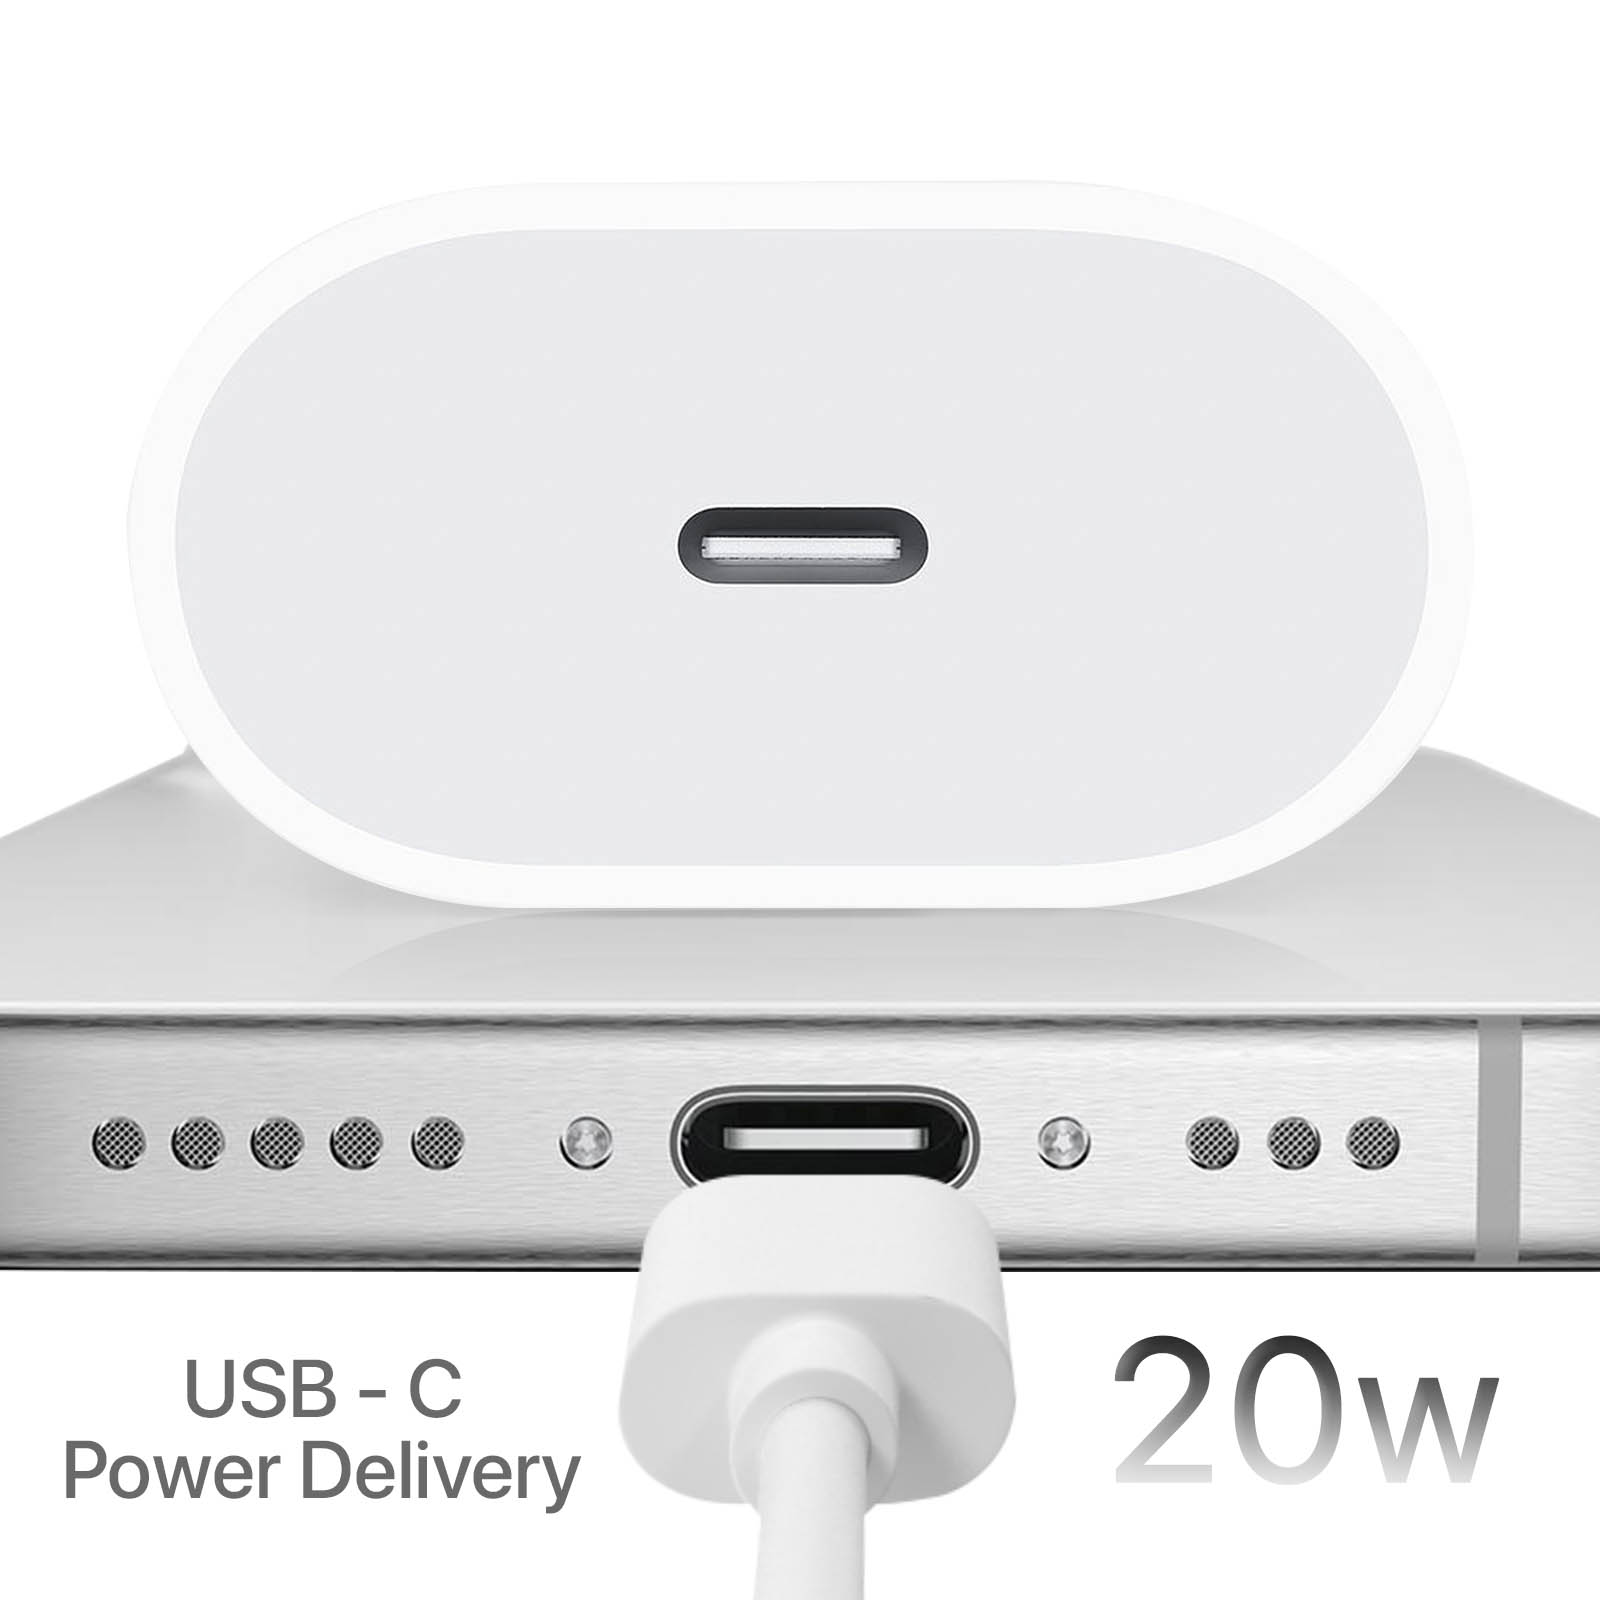 Câble chargeur rapide Apple 20W, de 1m et de 2m. –